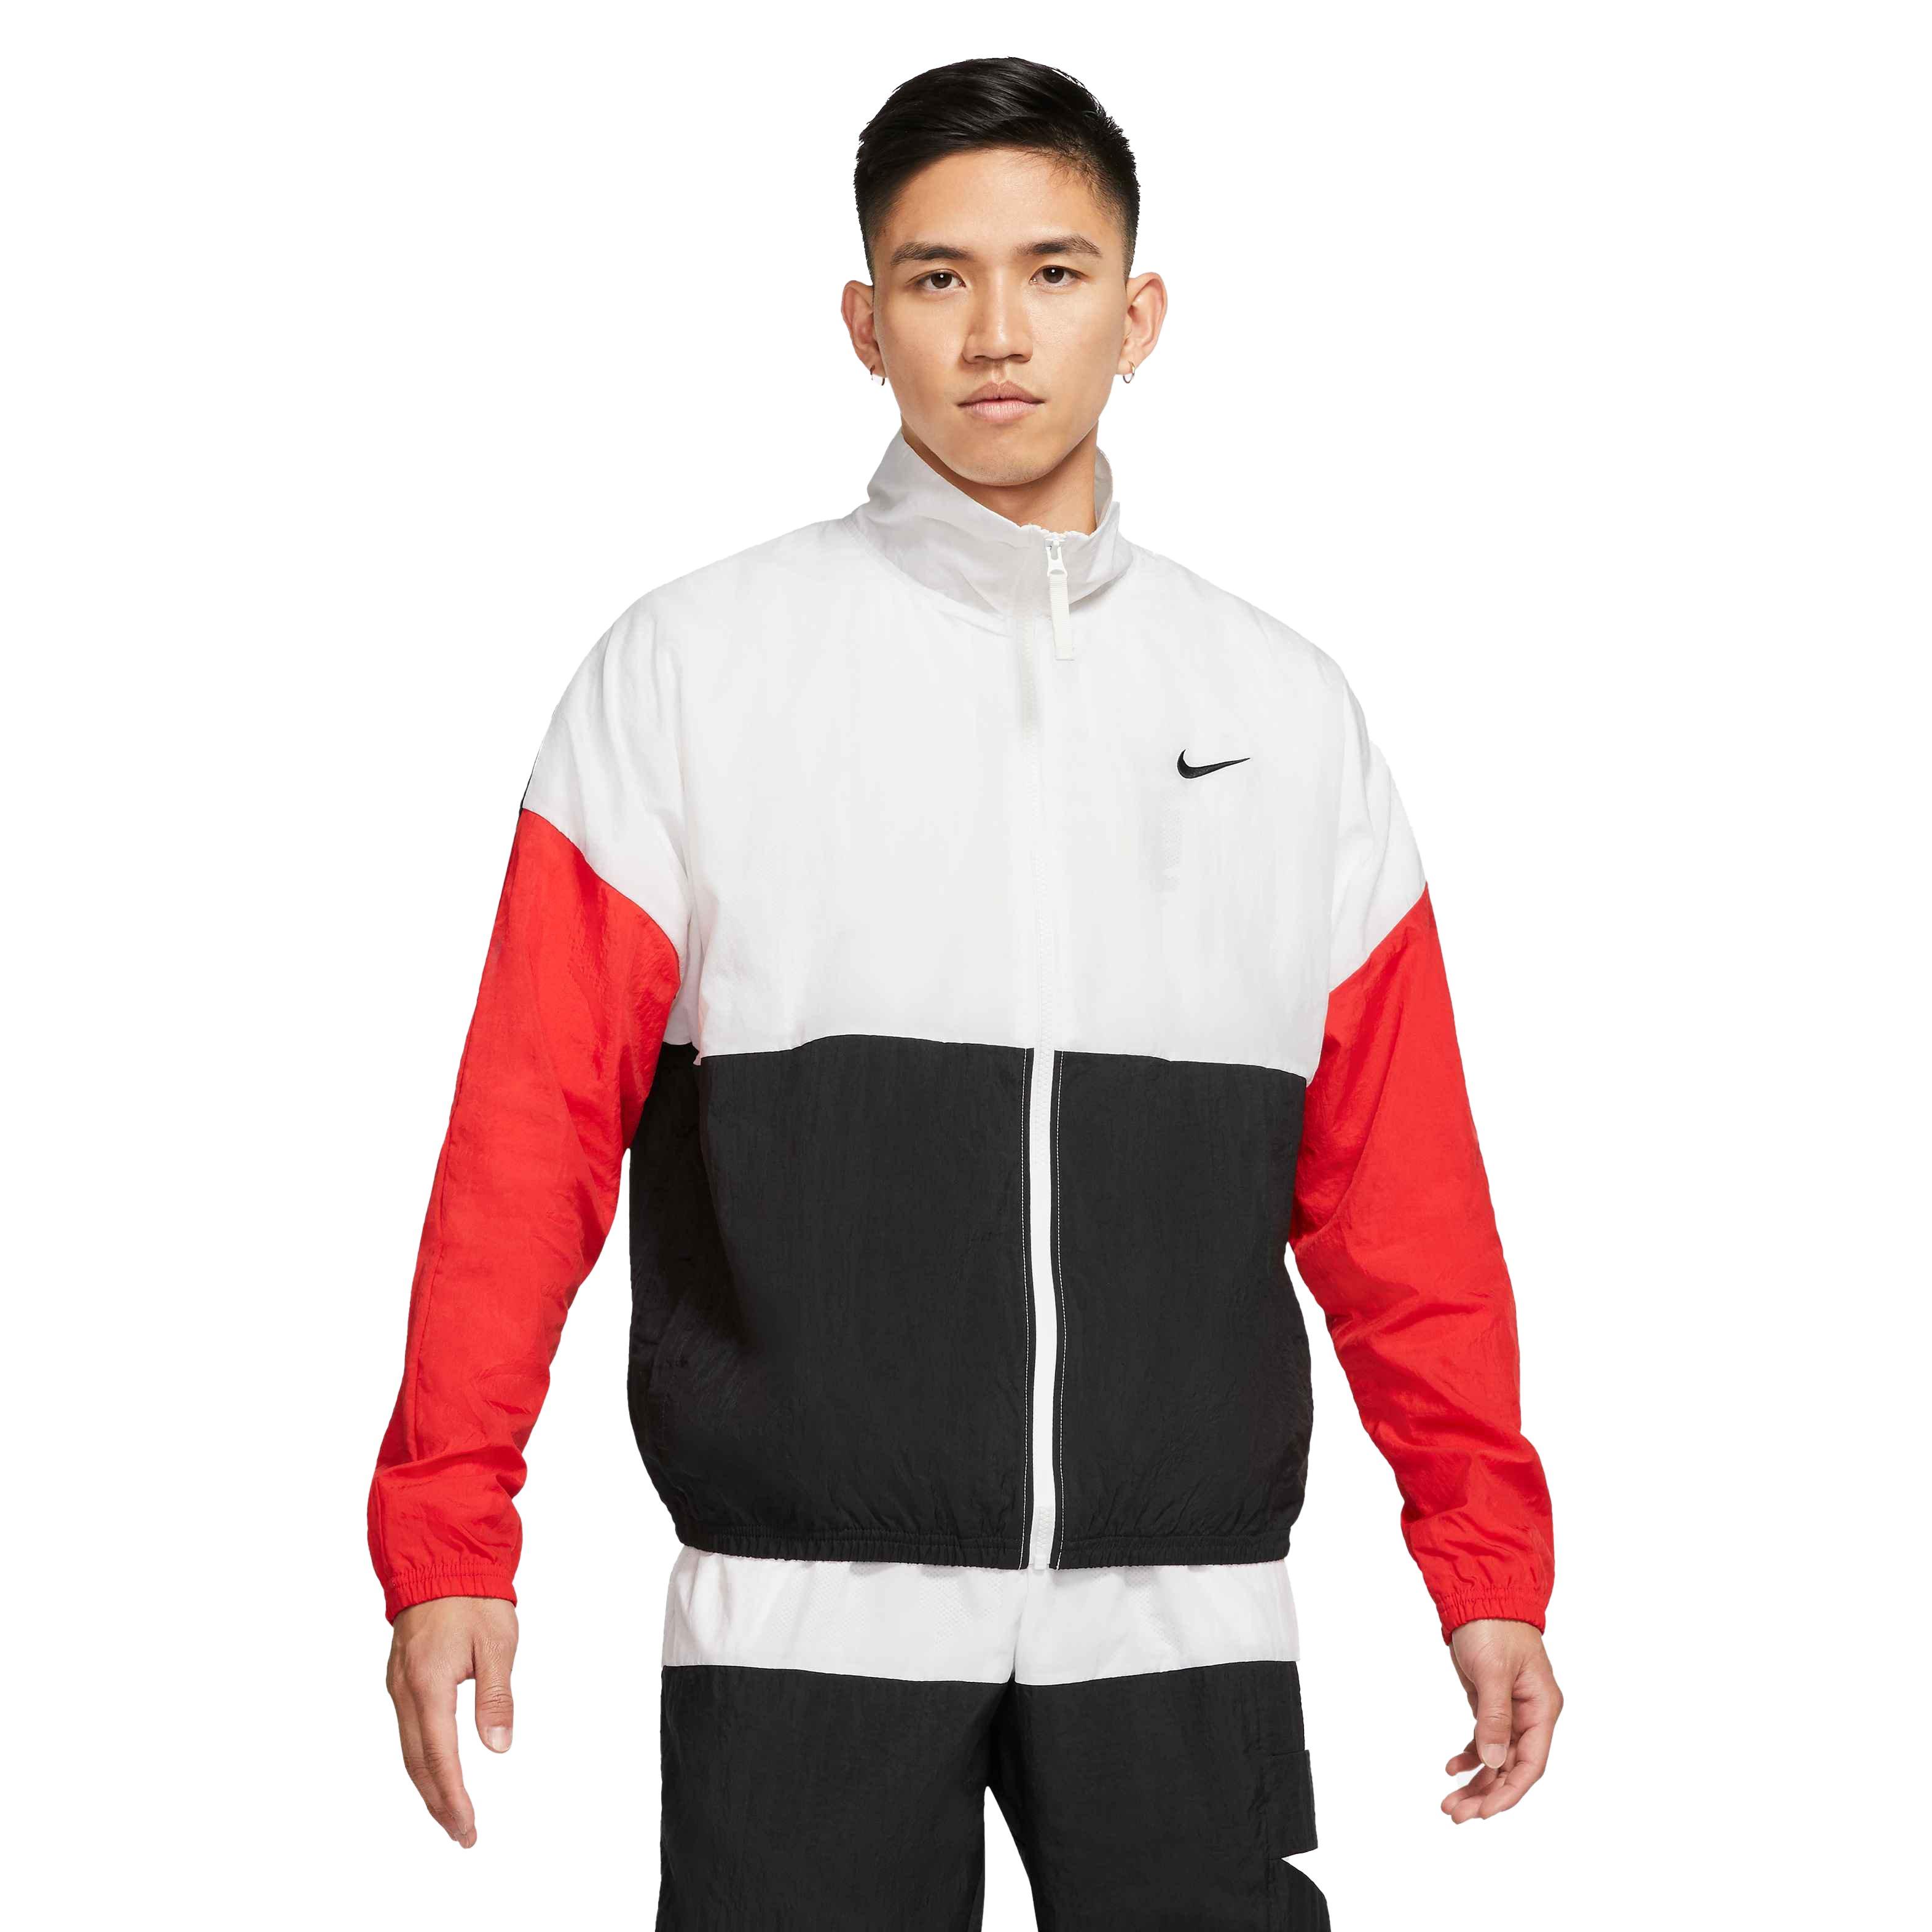 Nike Men's Starting Five Basketball Jacket-White/Black/Red